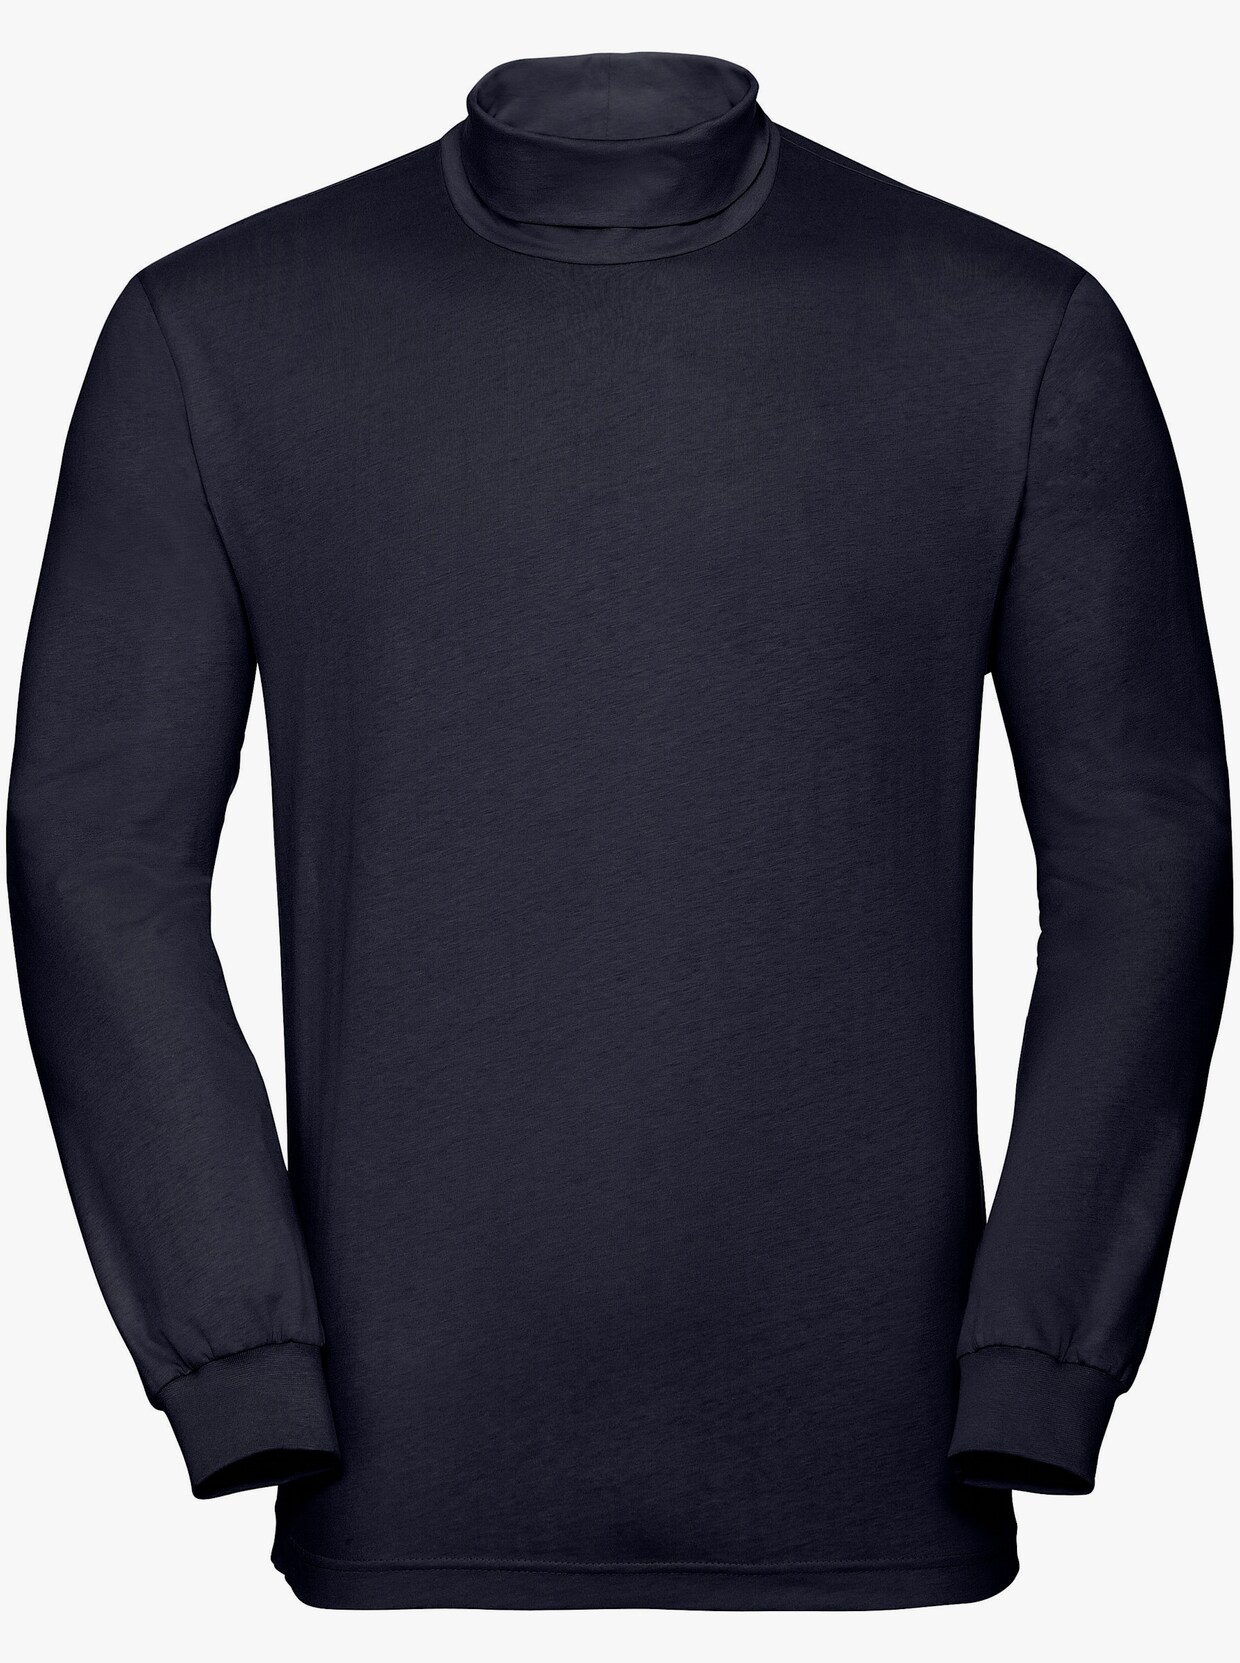 Rollkragen-Shirt - schwarz